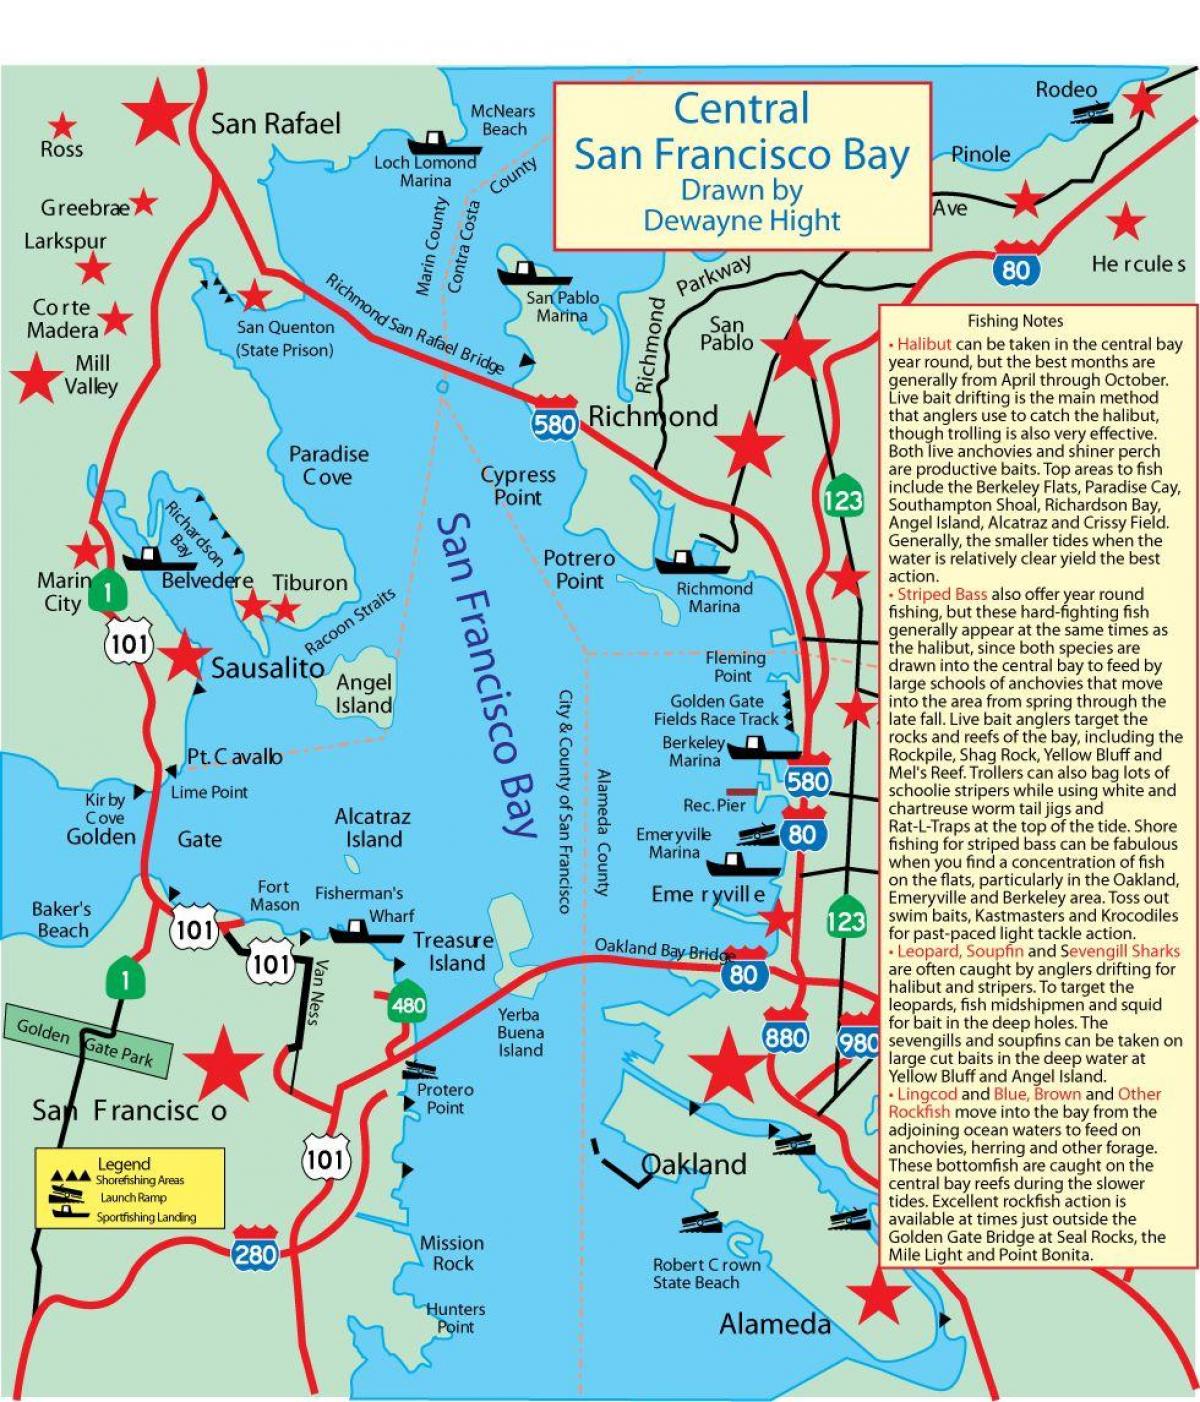 Harta e San Francisco bay peshkimit 